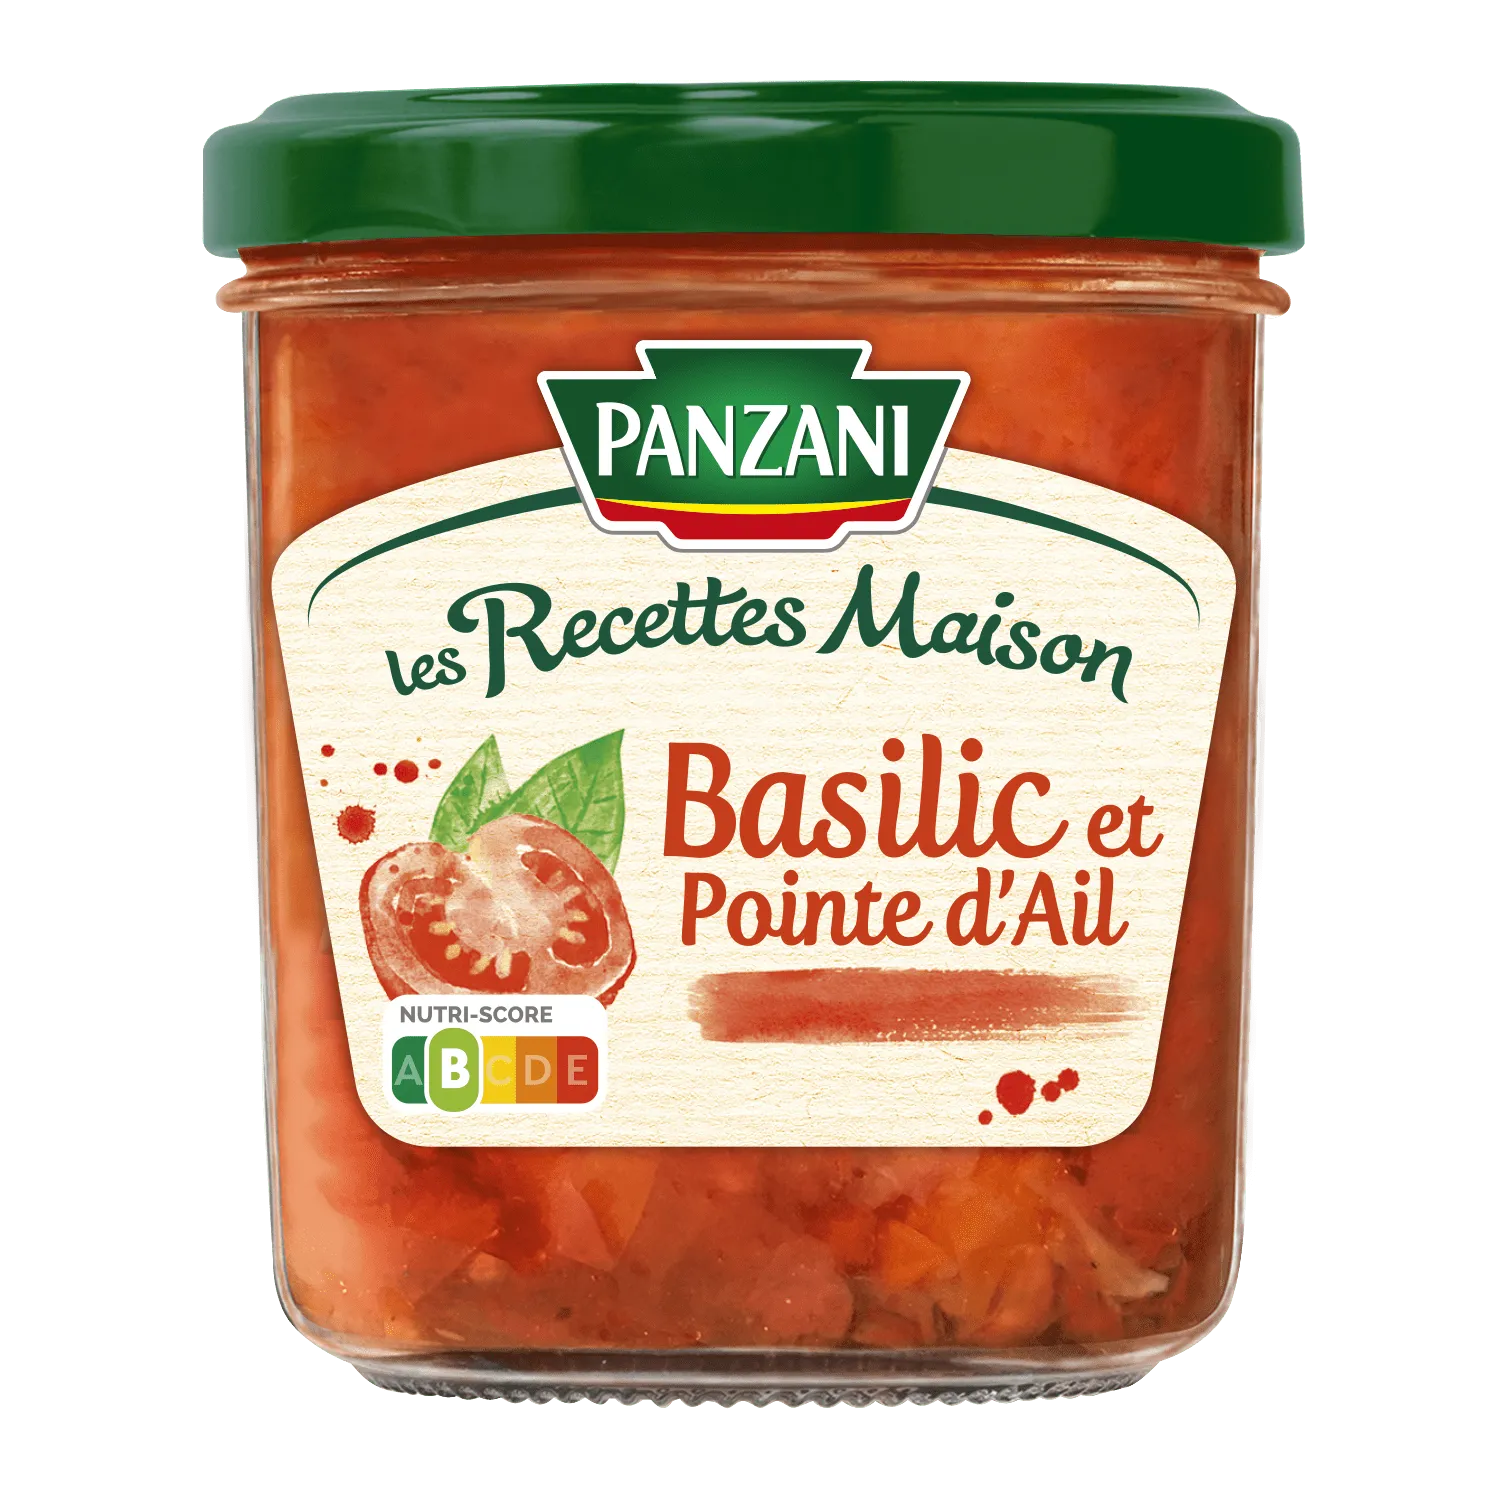 panzani_sauce_recettes_maison_basilic_ail